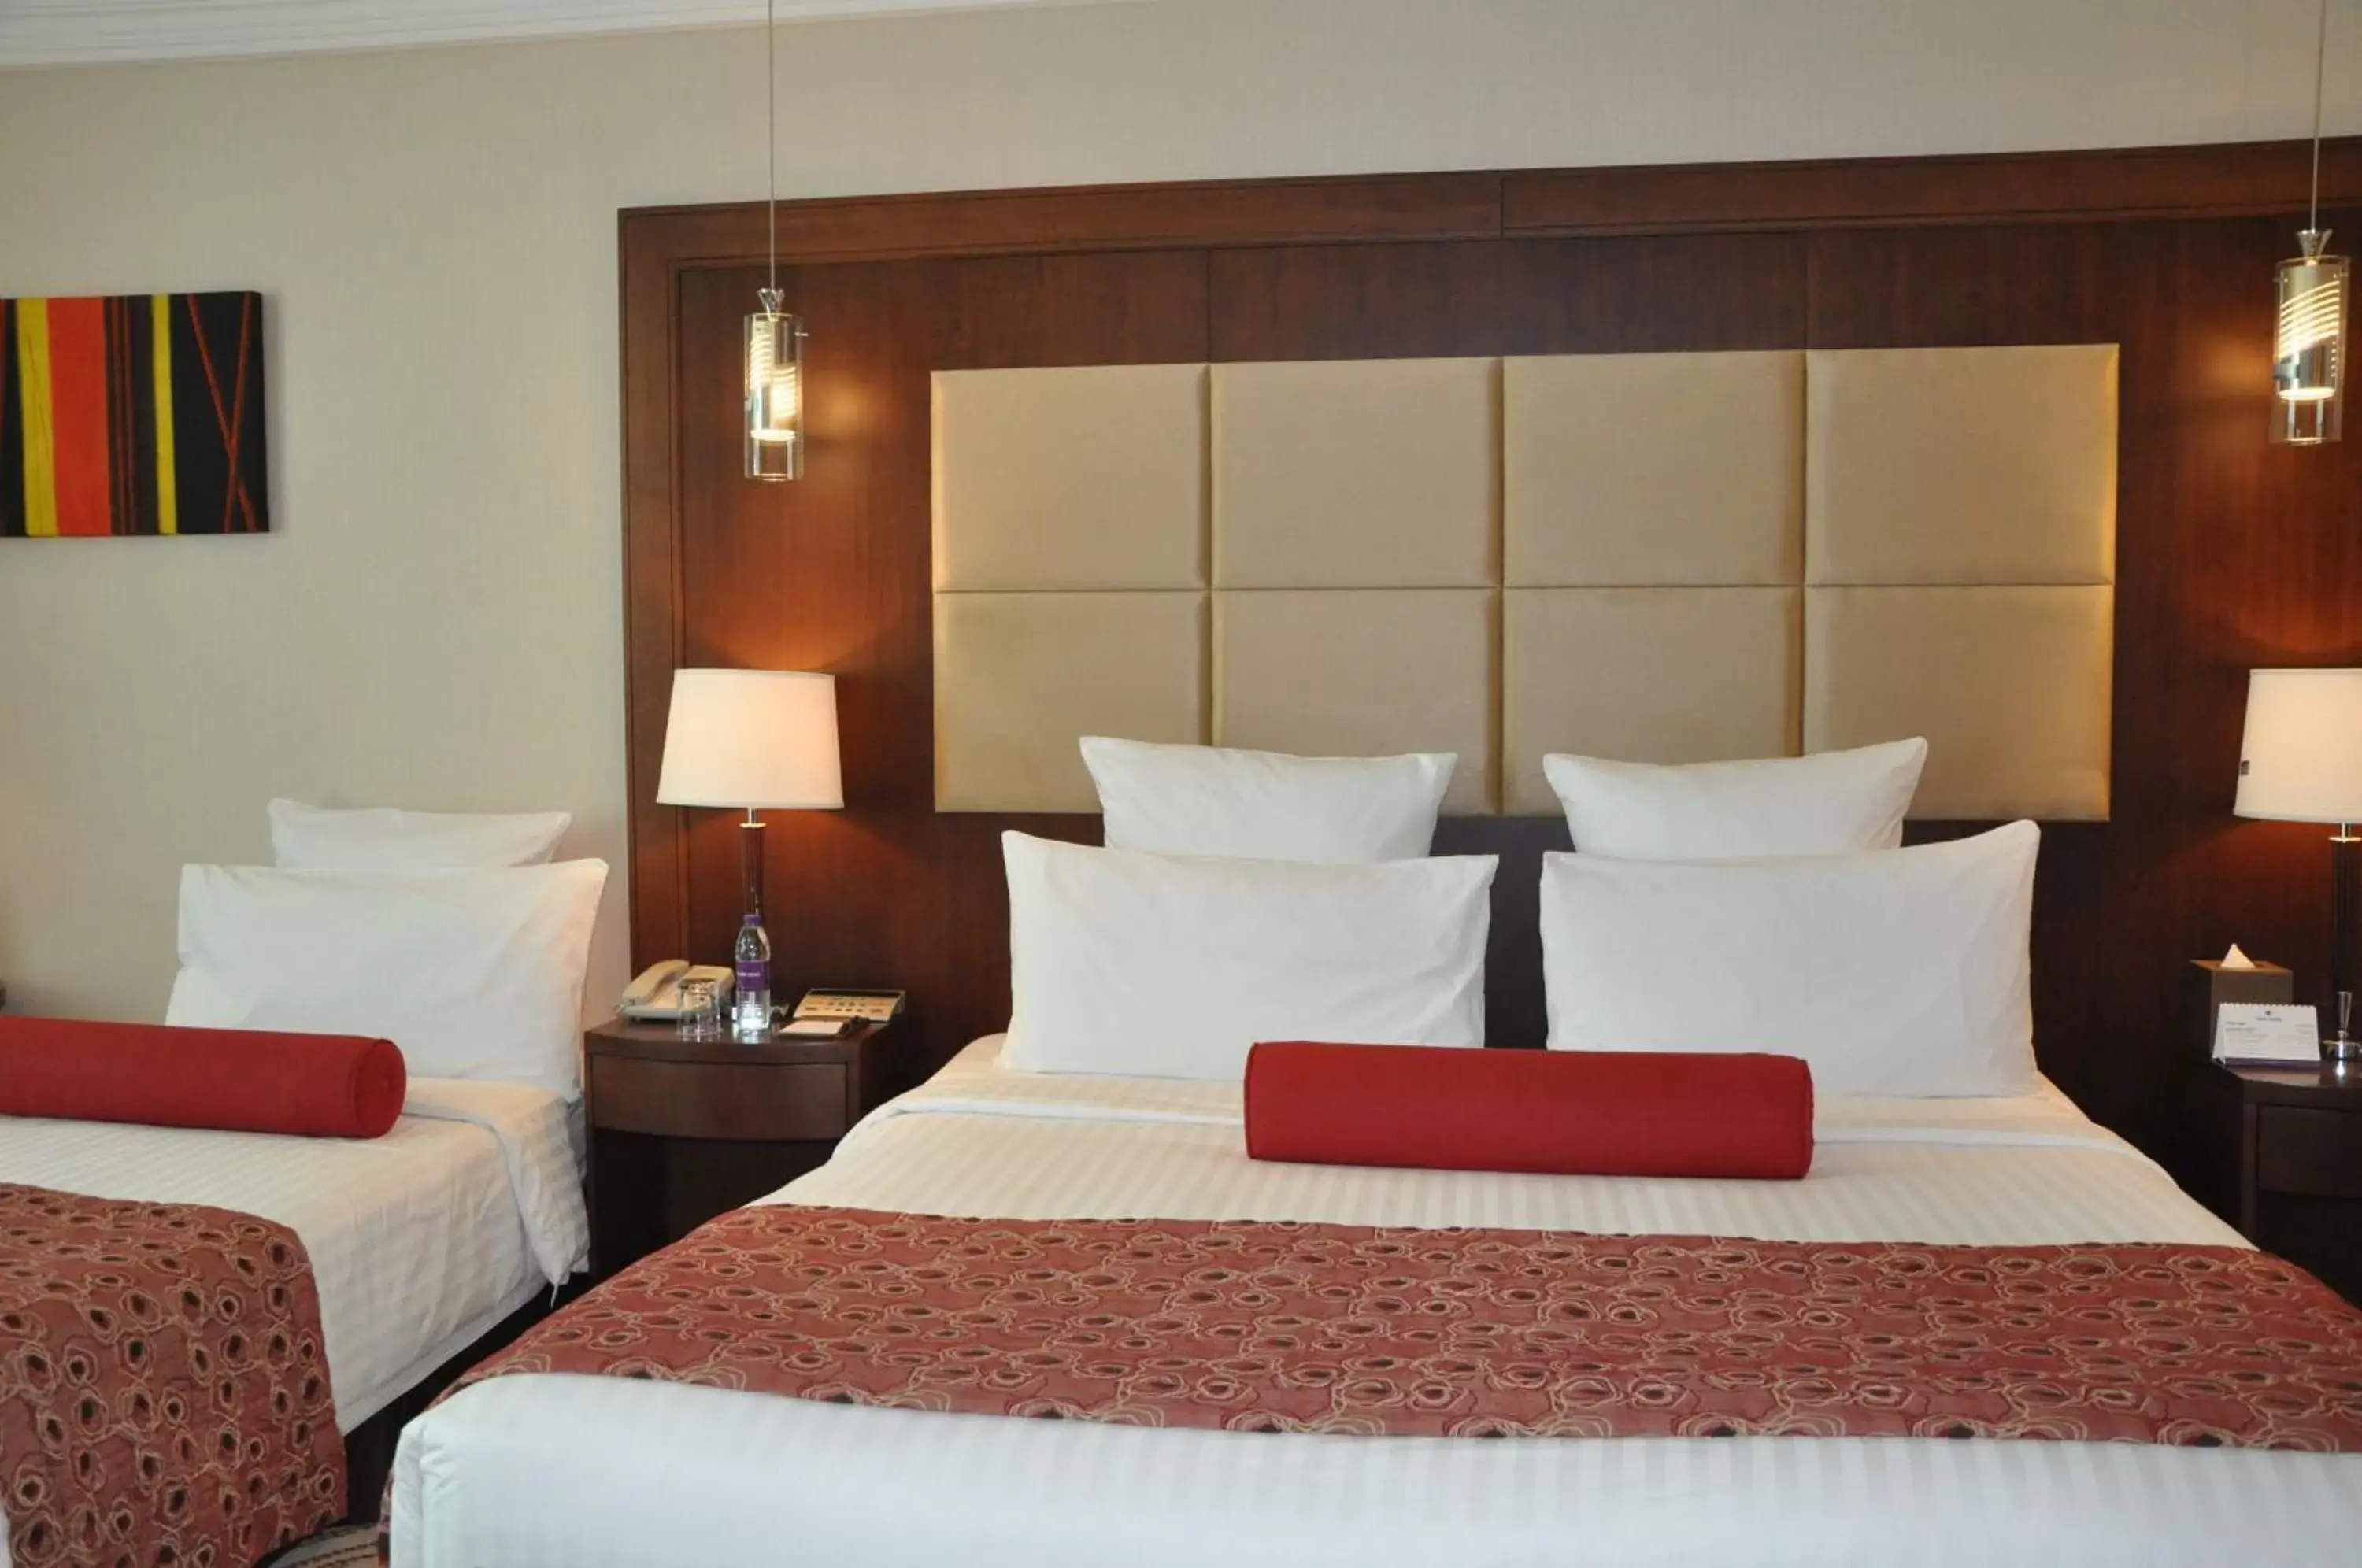 Bed in Park Regis Kris Kin Hotel